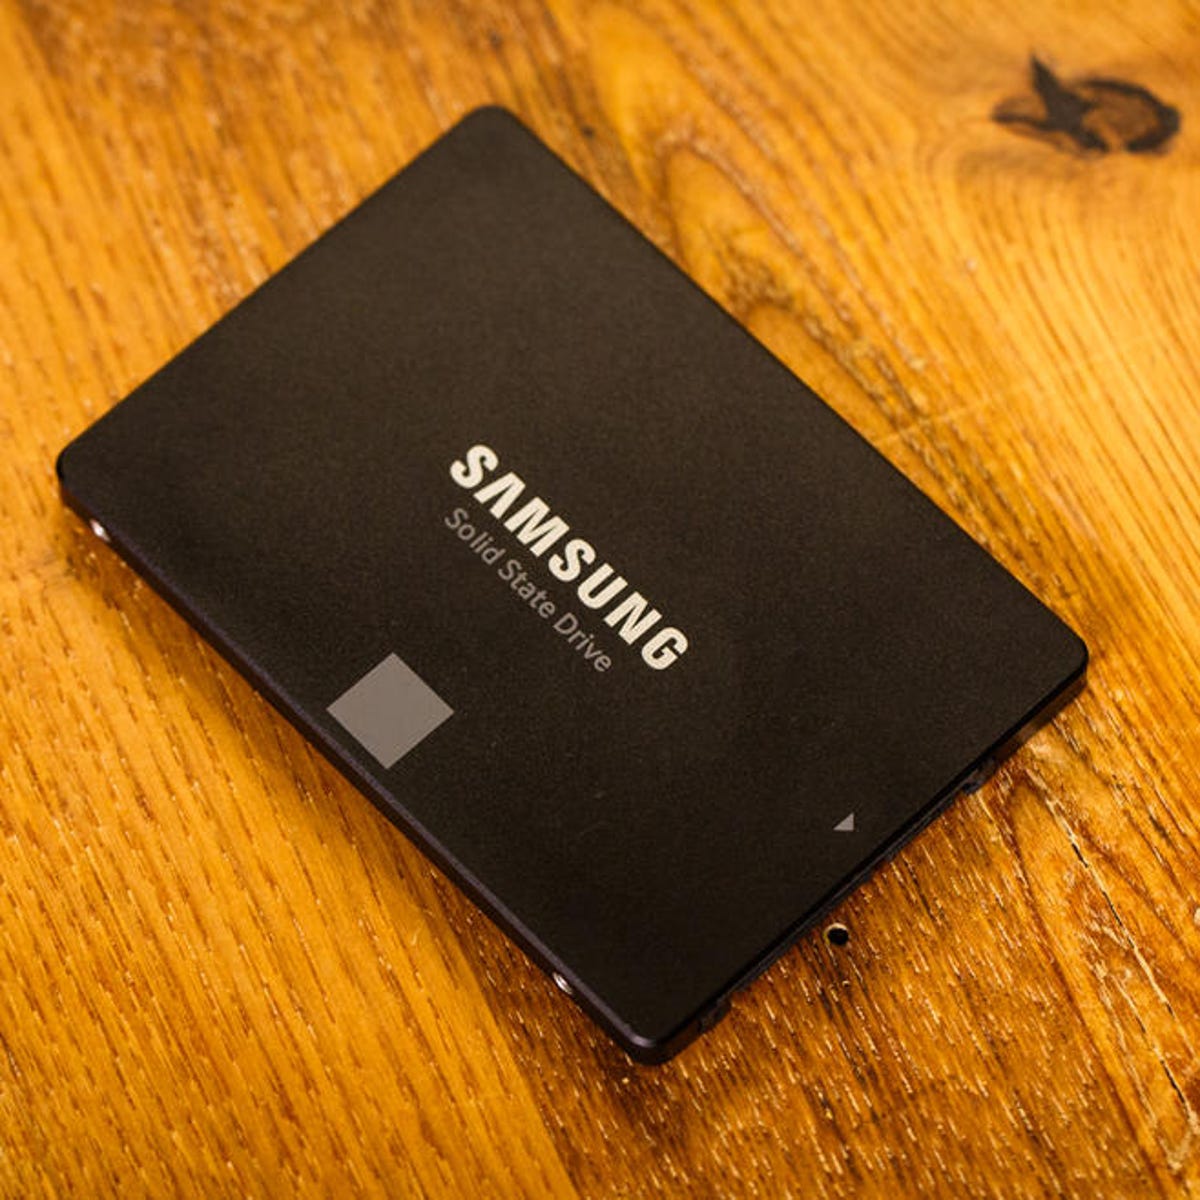 Ssd price. SSD Samsung 760 EVO. Твердый накопитель SSD.